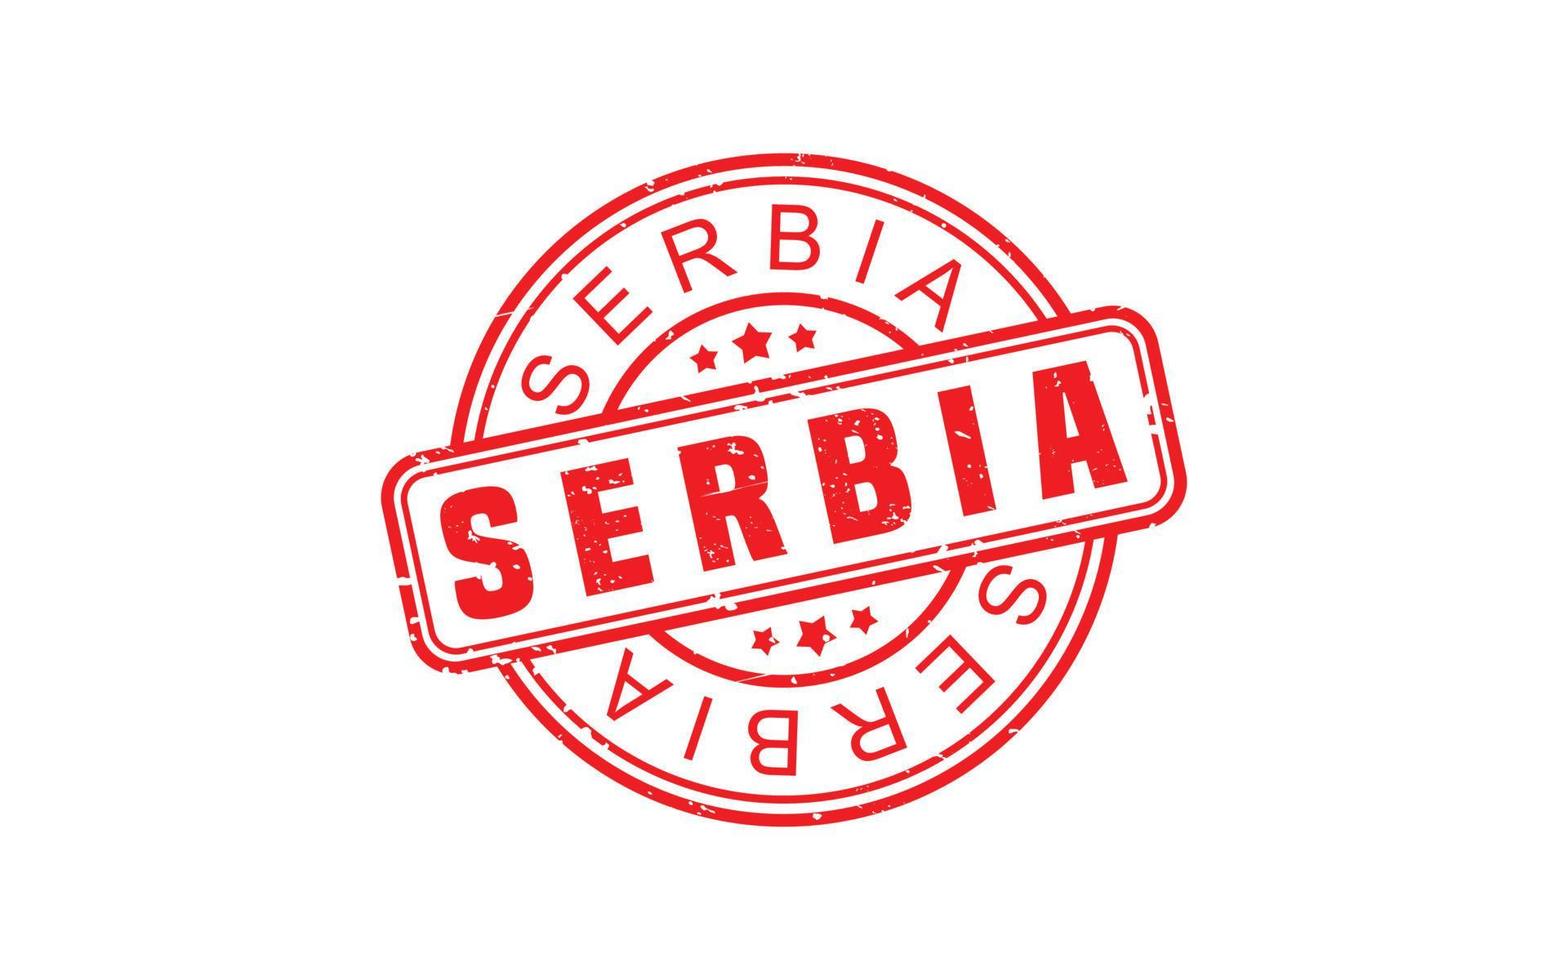 serbia stämpel sudd med grunge stil på vit bakgrund vektor